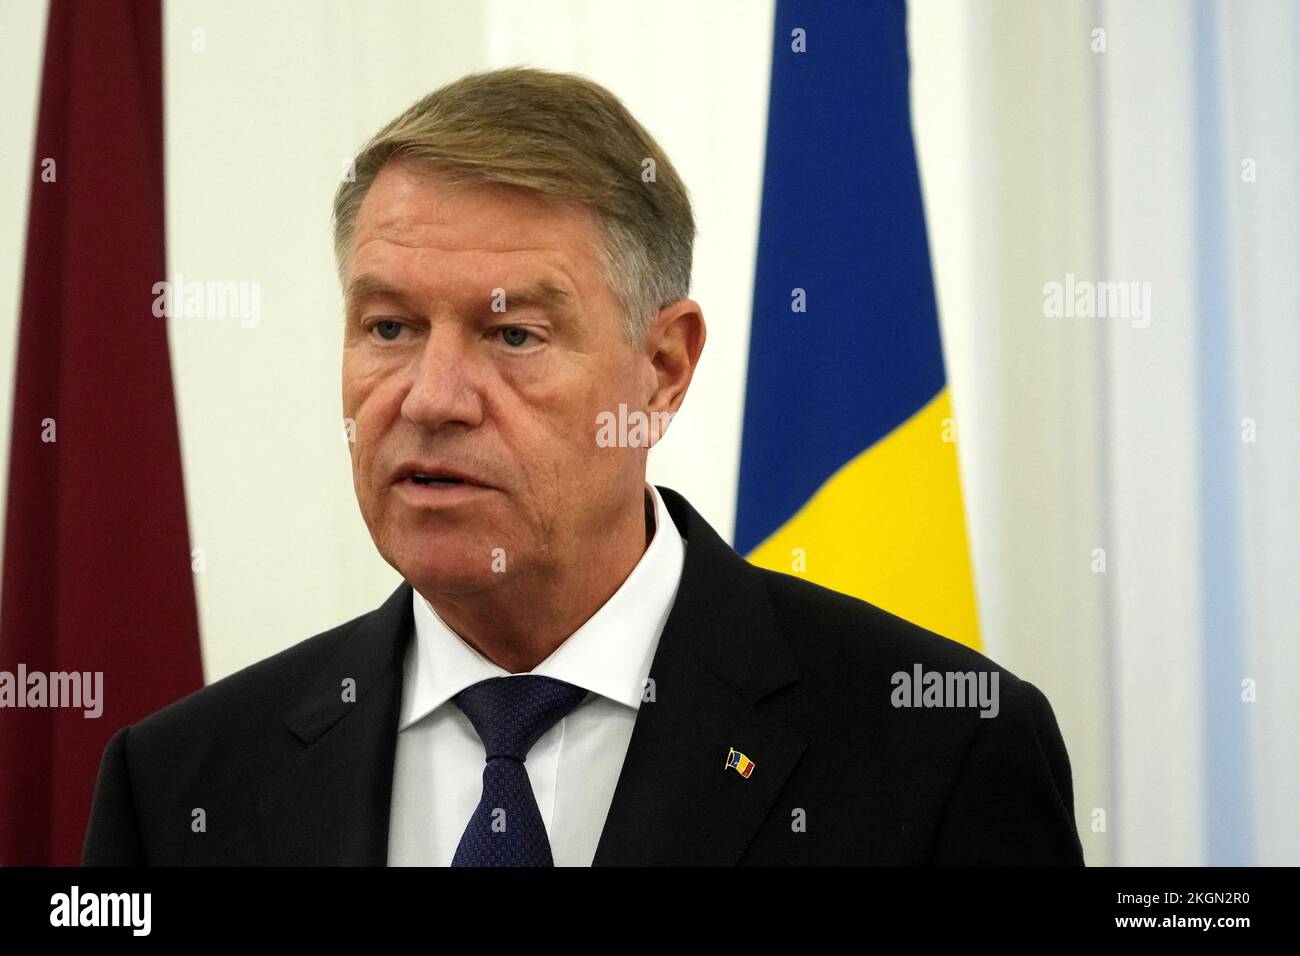 Le président roumain Klaus Iohannis prend la parole lors d'une conférence de presse à Riga, en Lettonie, 23 novembre 2022. REUTERS/Ints Kalnins Banque D'Images